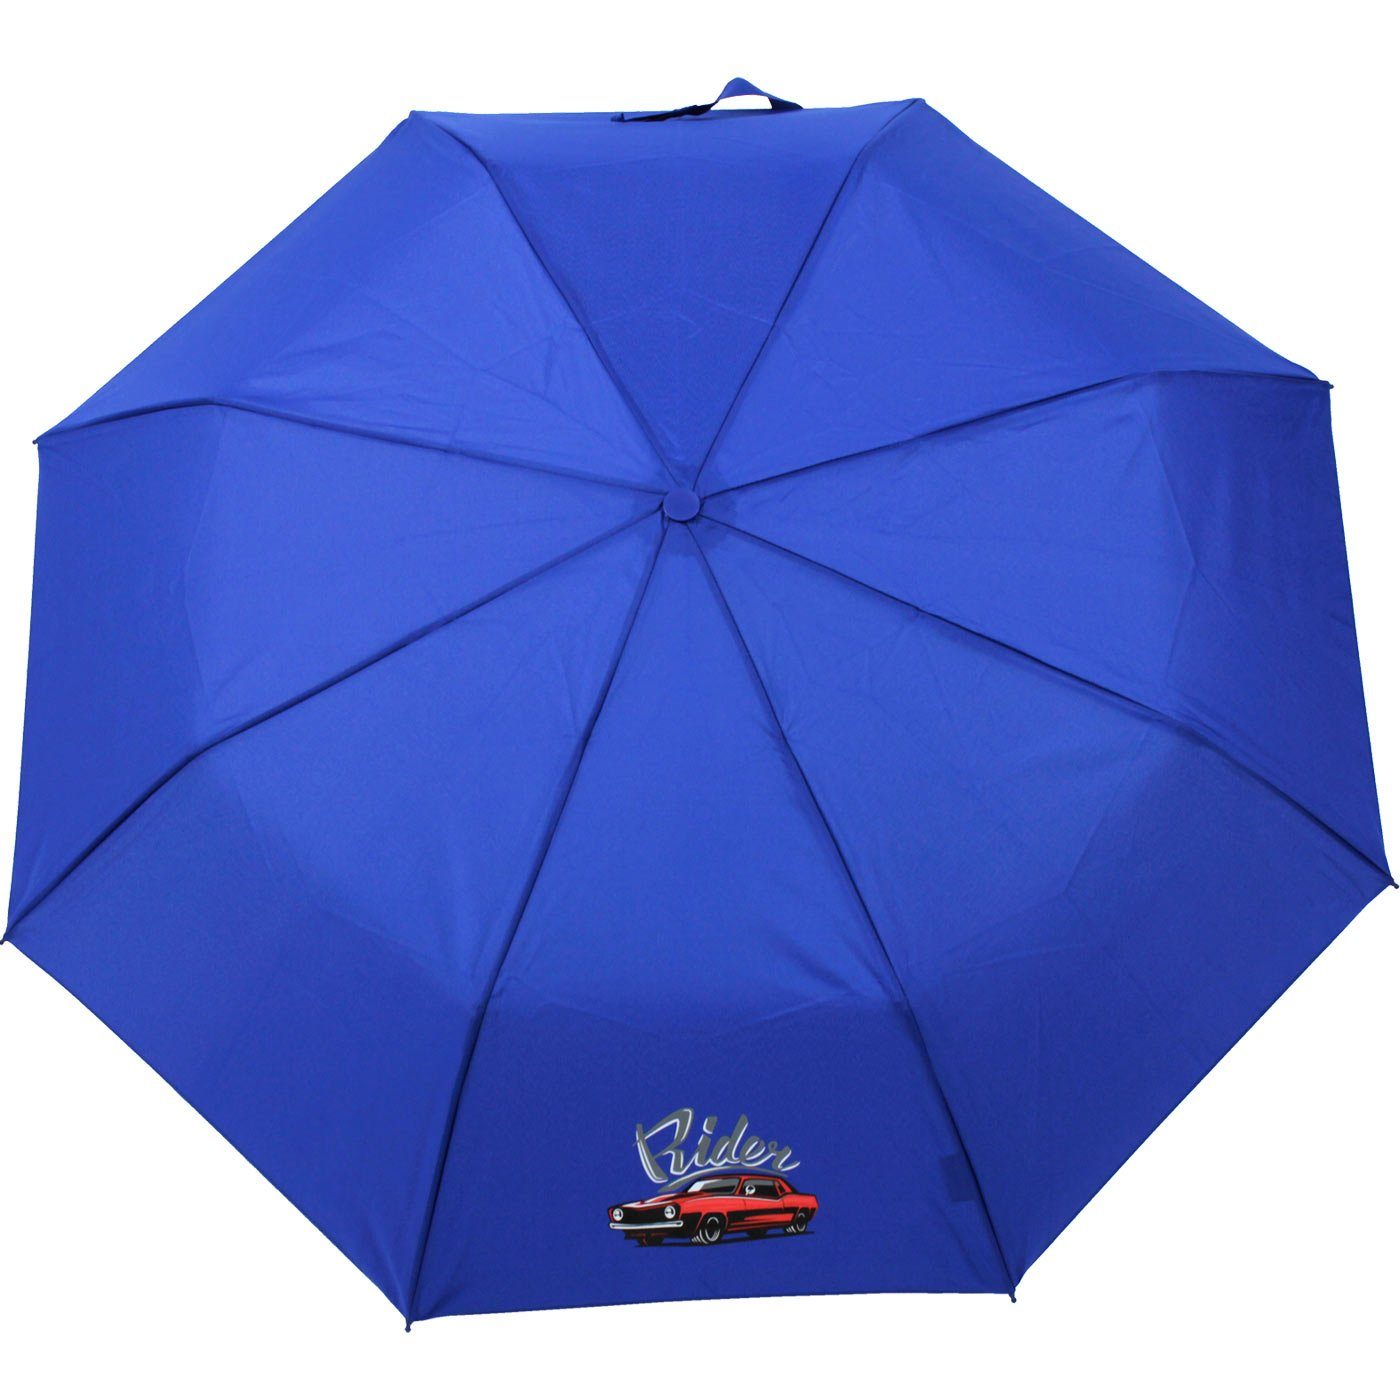 Mini coolen blau, leicht leichter - Motiven ein Kids derby Schule den Schirm mit Schulweg Taschenregenschirm cars Kinderschirm rider für Jungen